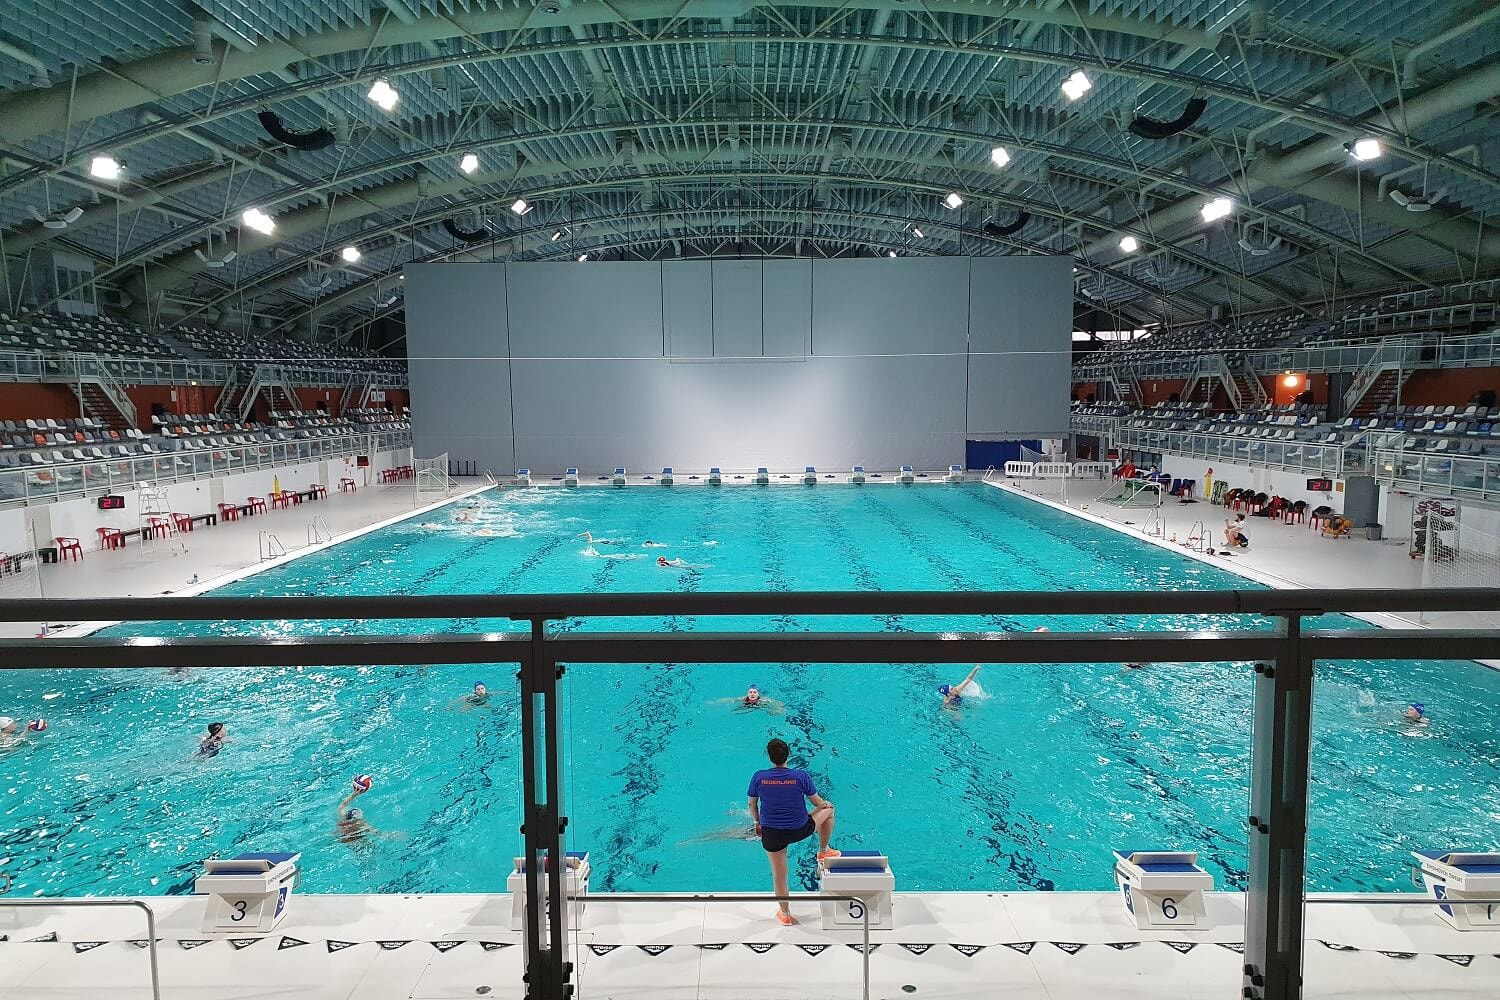 Duurzame energie door warmte-uitwisseling in zwemstadion